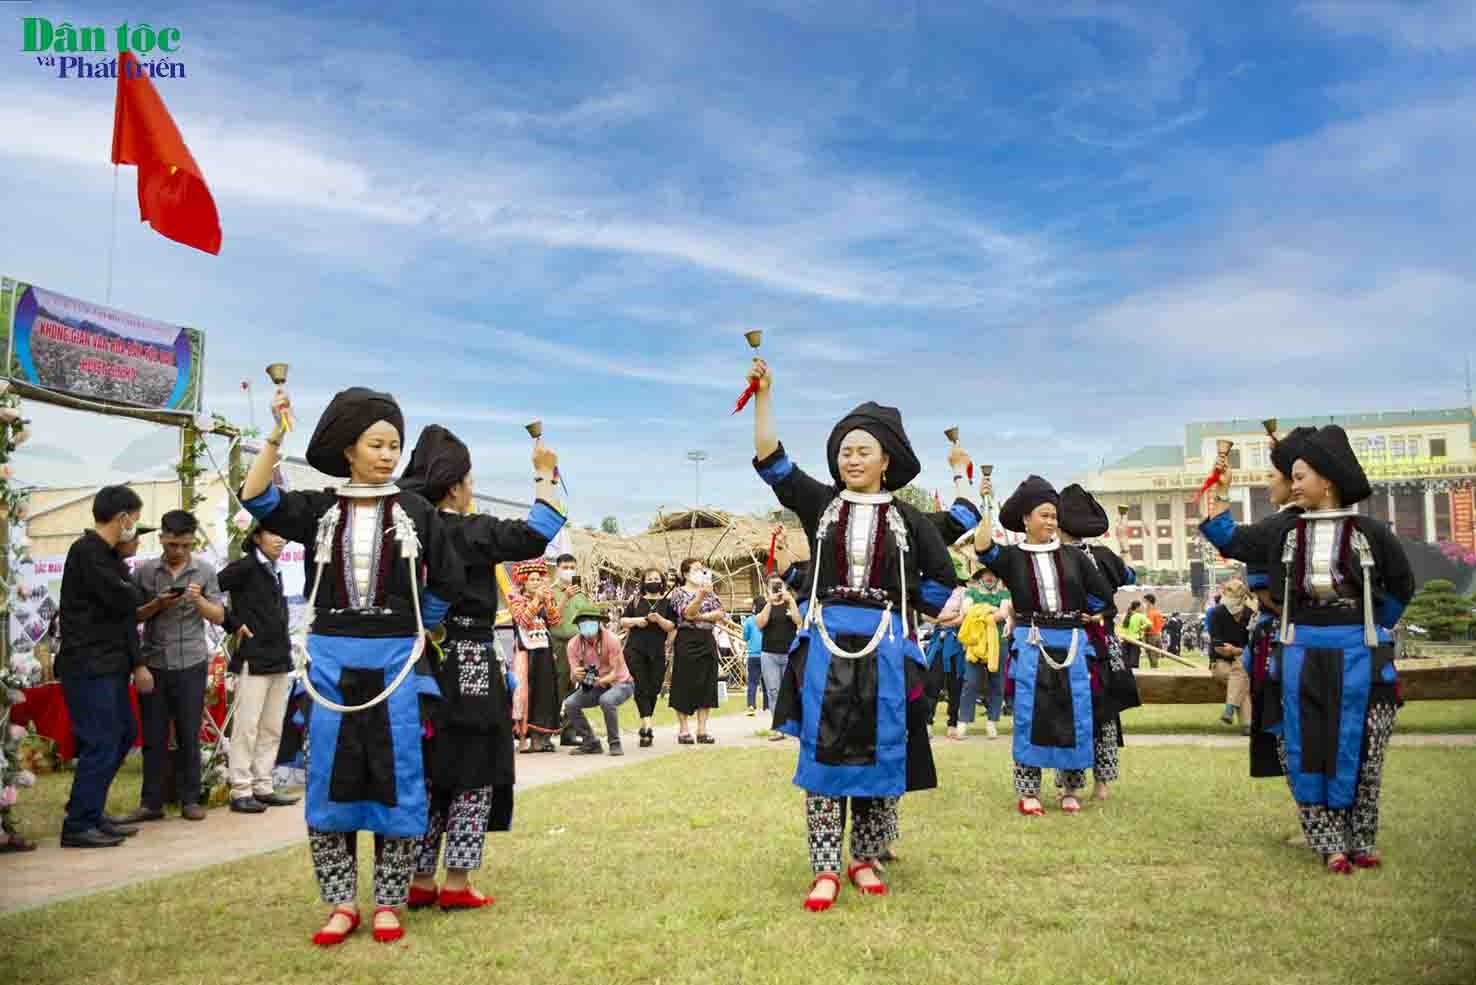 Sôi nổi, mạnh mẽ trong vũ điệu múa chuông truyền thống của các cô gái Dao khâu , huyện Sìn Hồ